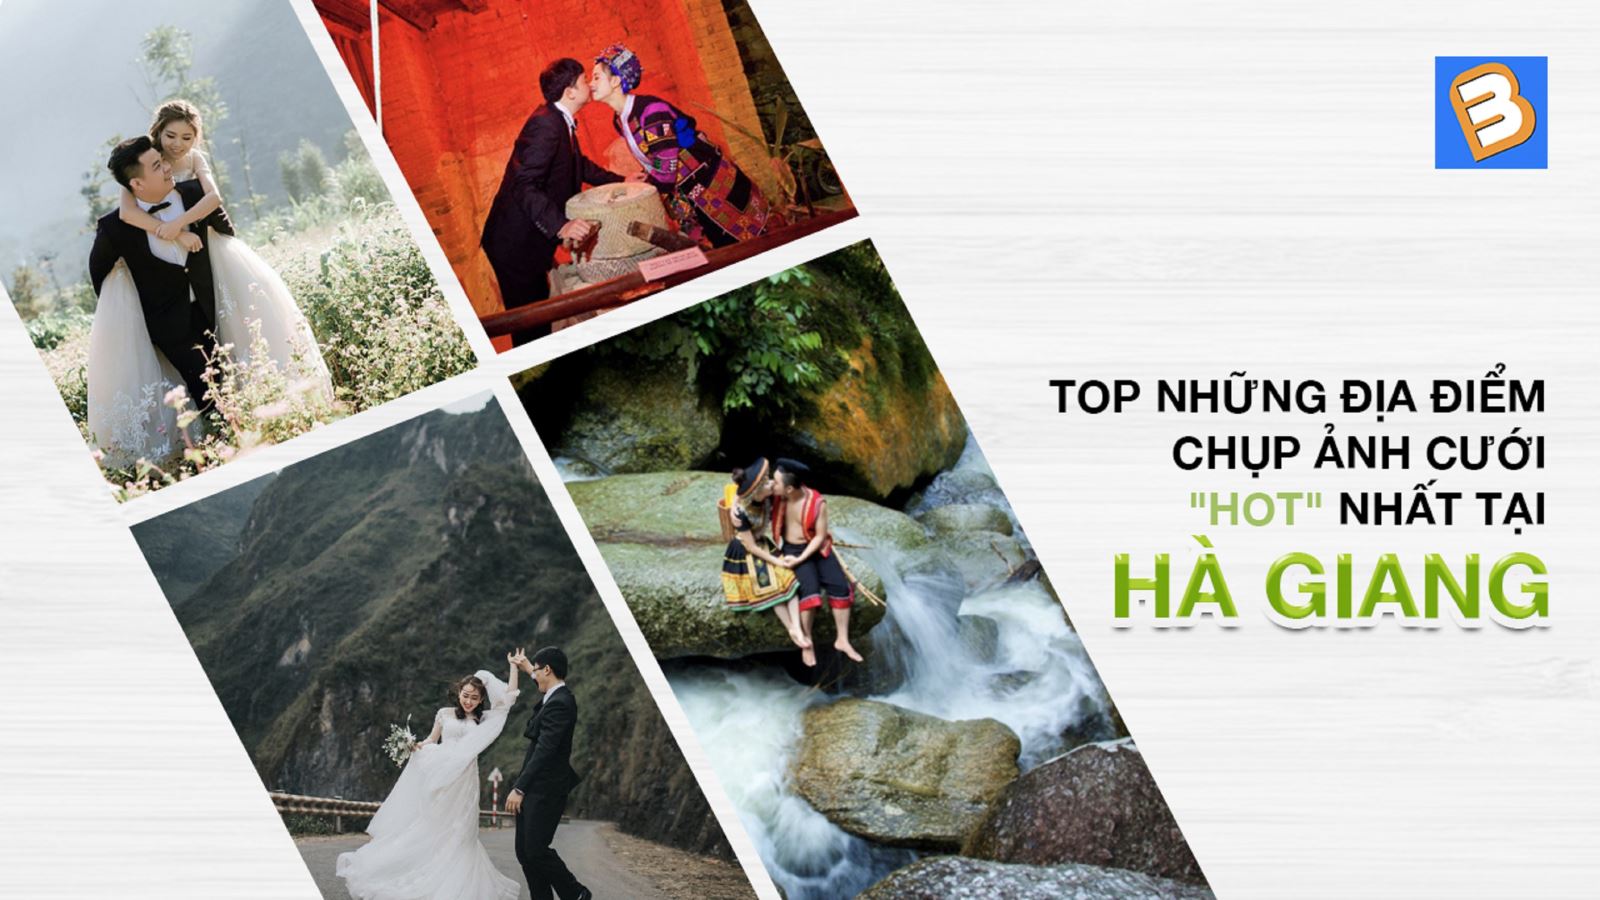 Top những địa điểm chụp ảnh cưới 'hot' nhất tại Hà Giang